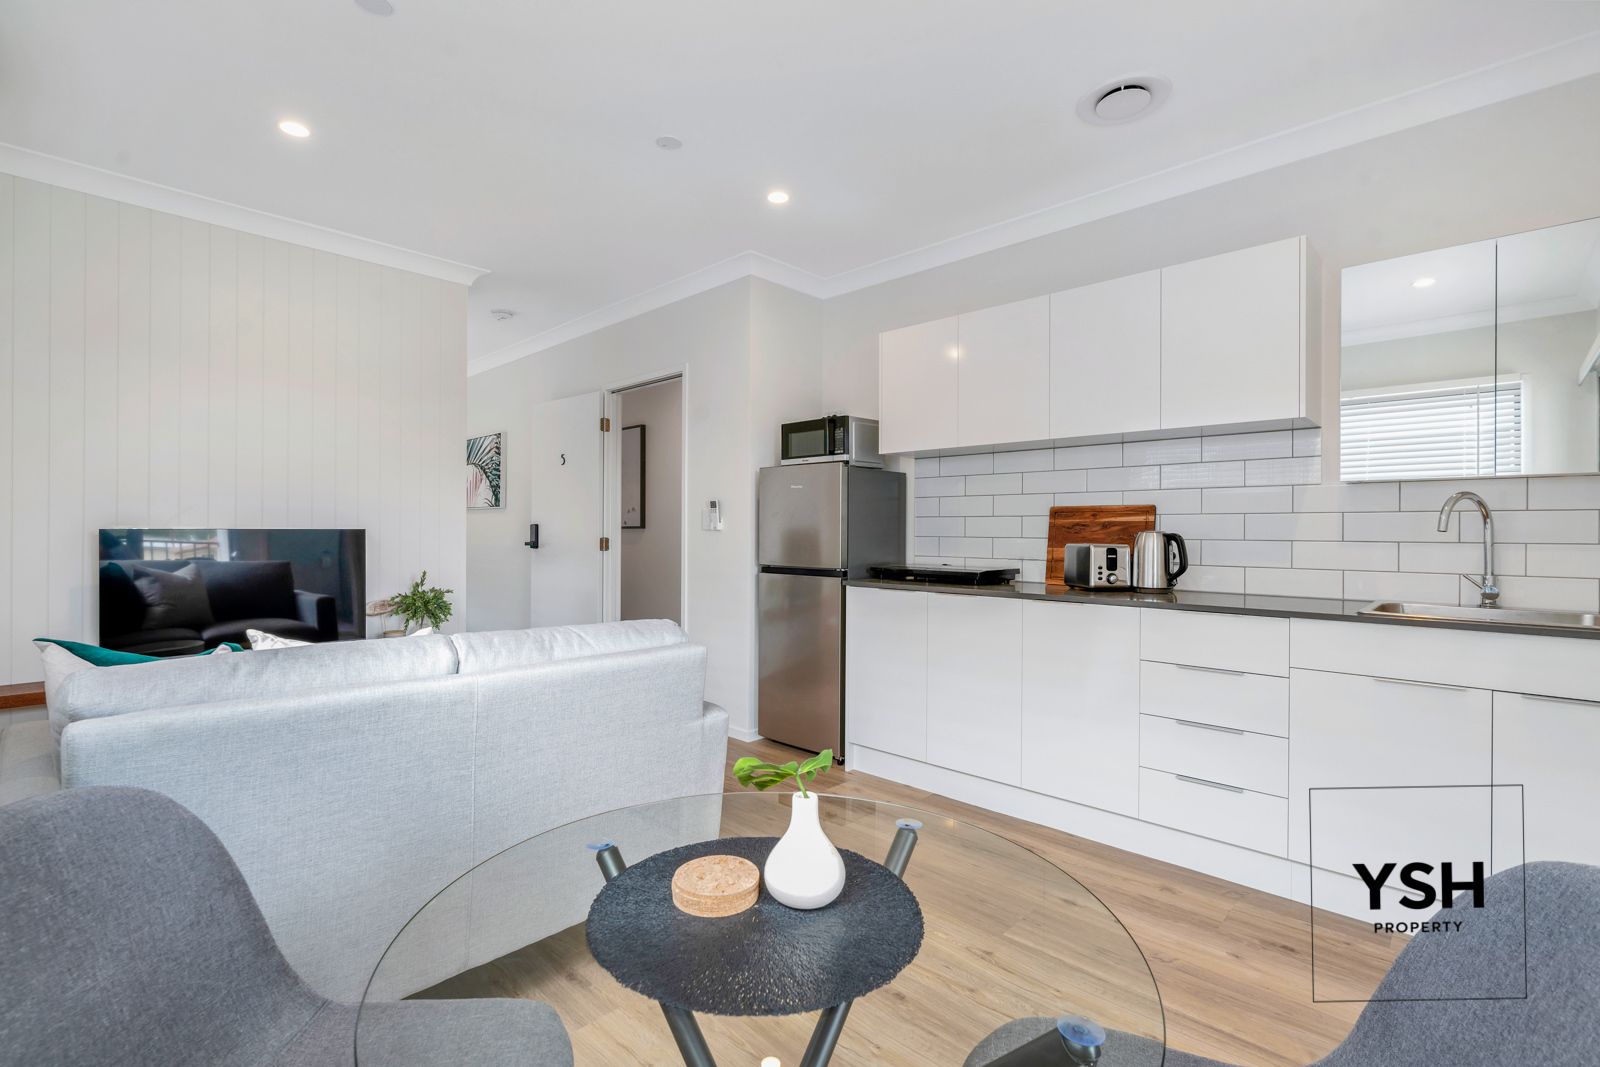 1 bedrooms Apartment / Unit / Flat in 92 Sherwood Road ROCKLEA QLD, 4106